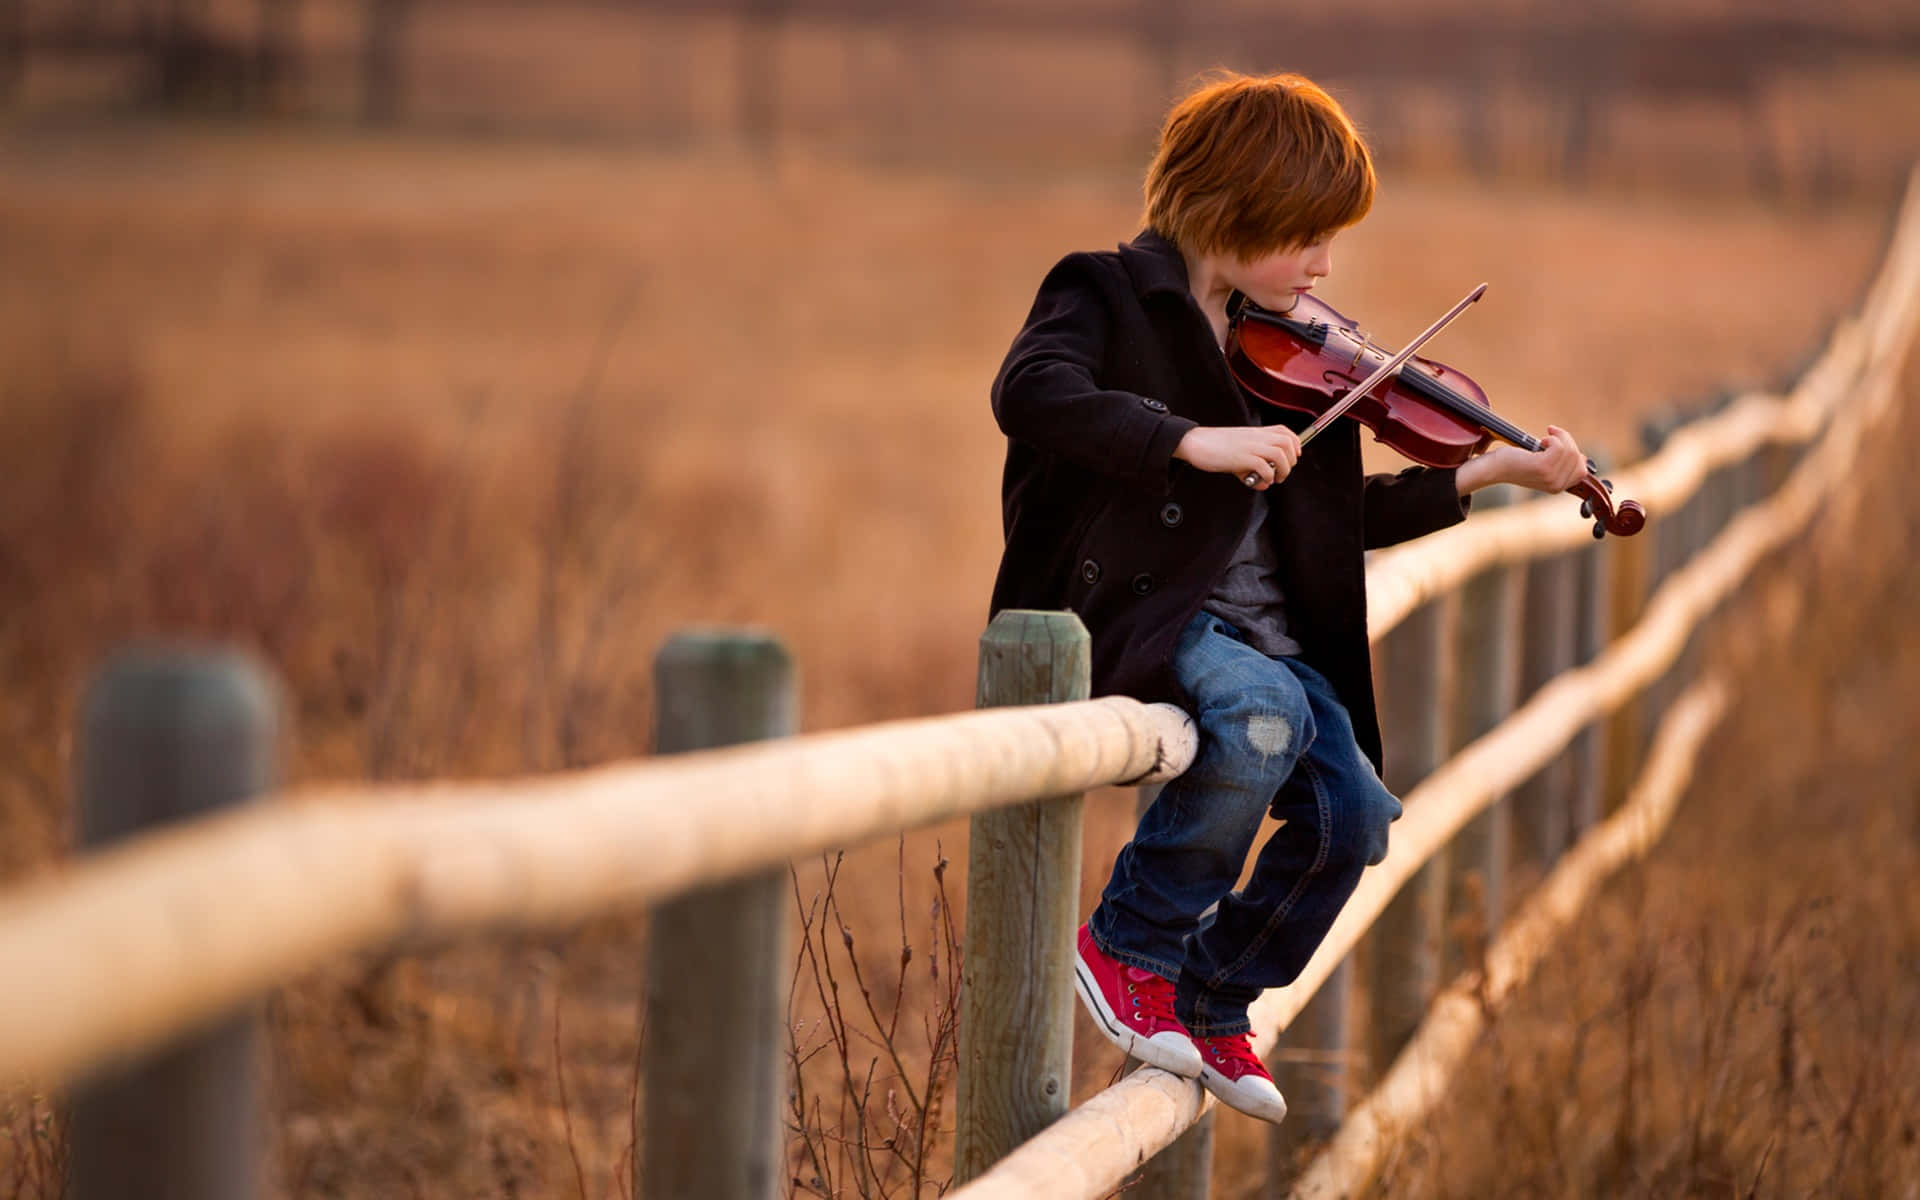 Pojkesom Spelar Violin På Staketbild.